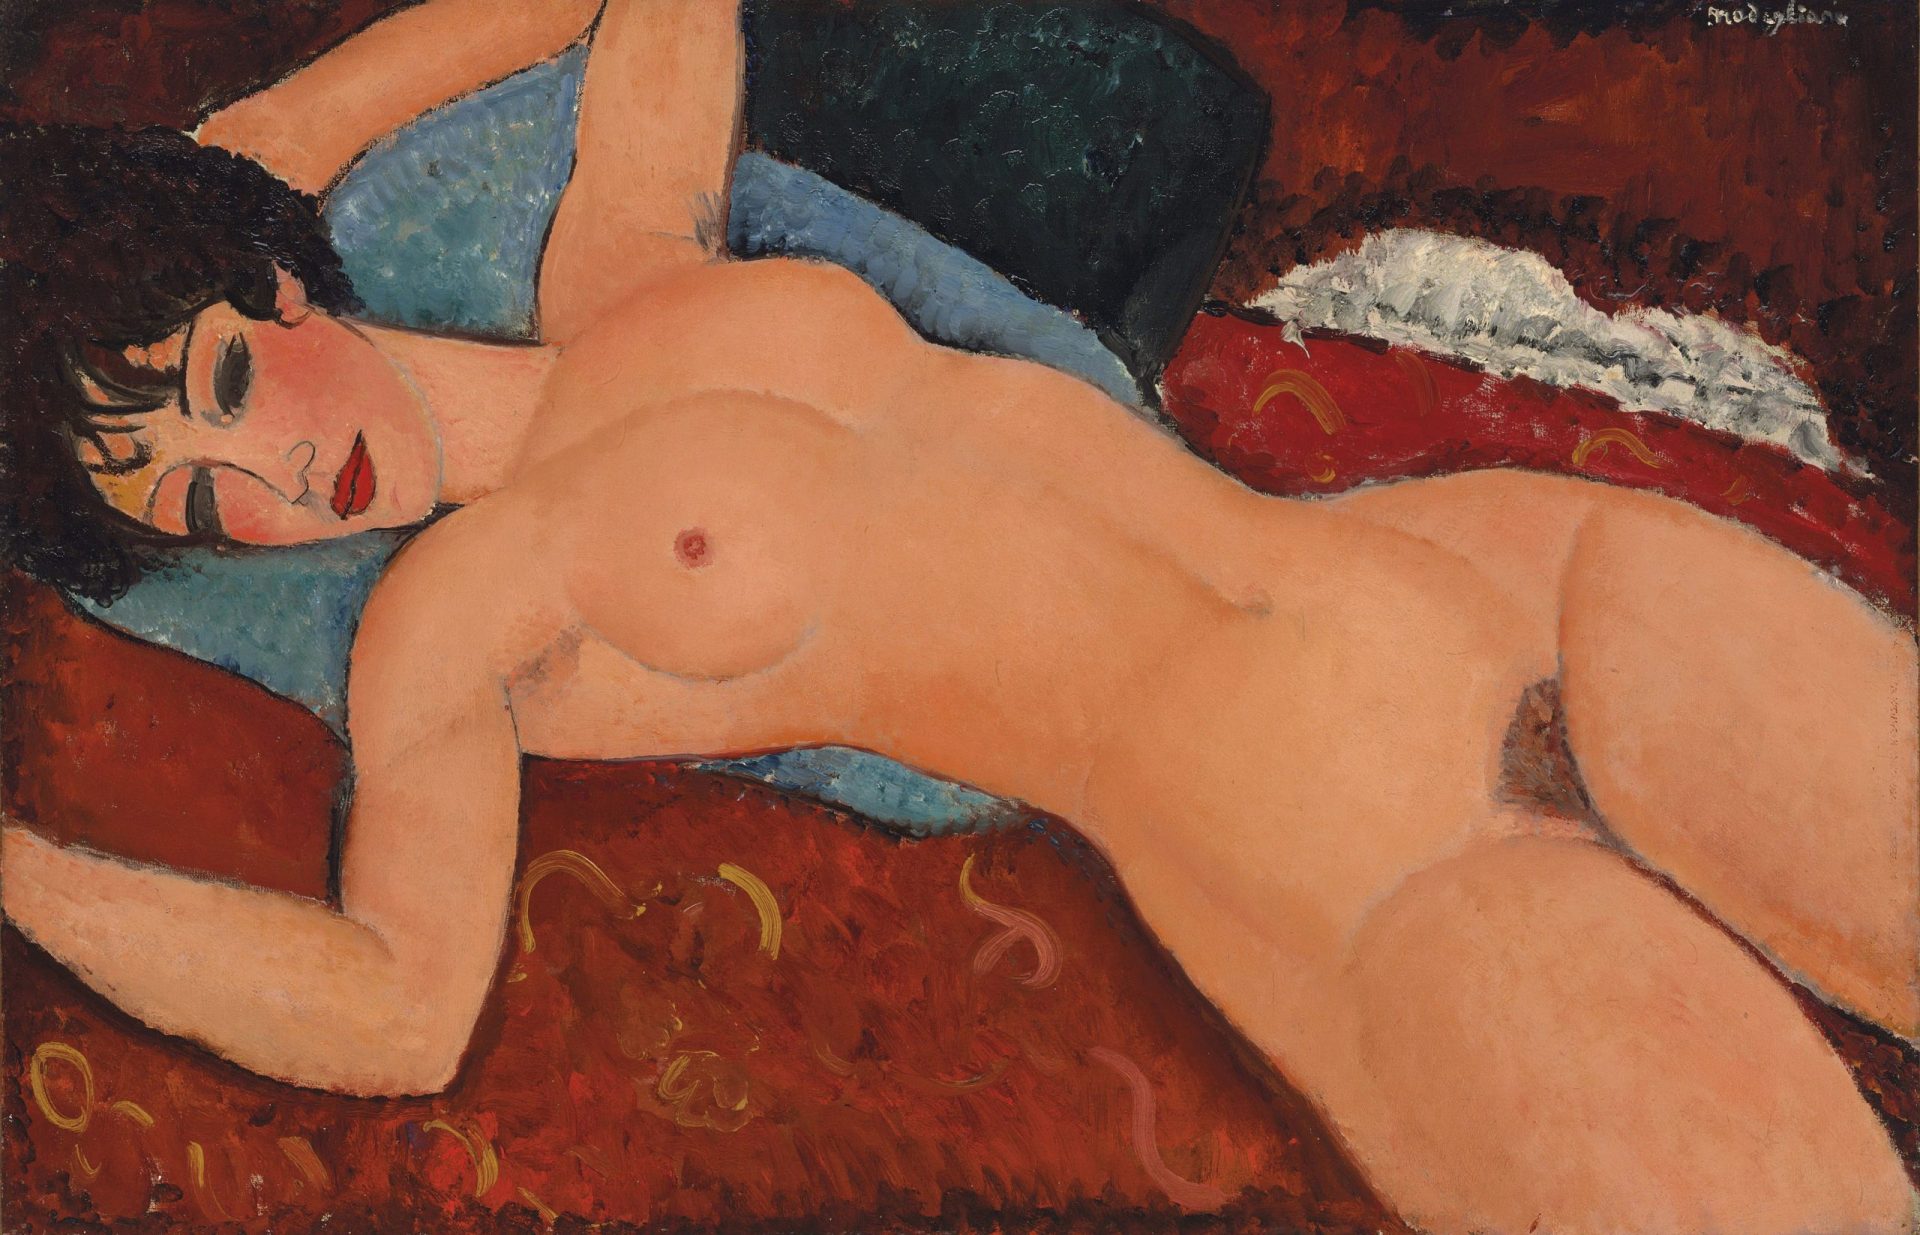 Quadro de Modigliani leiloado em Nova Iorque por 170 milhões de dólares